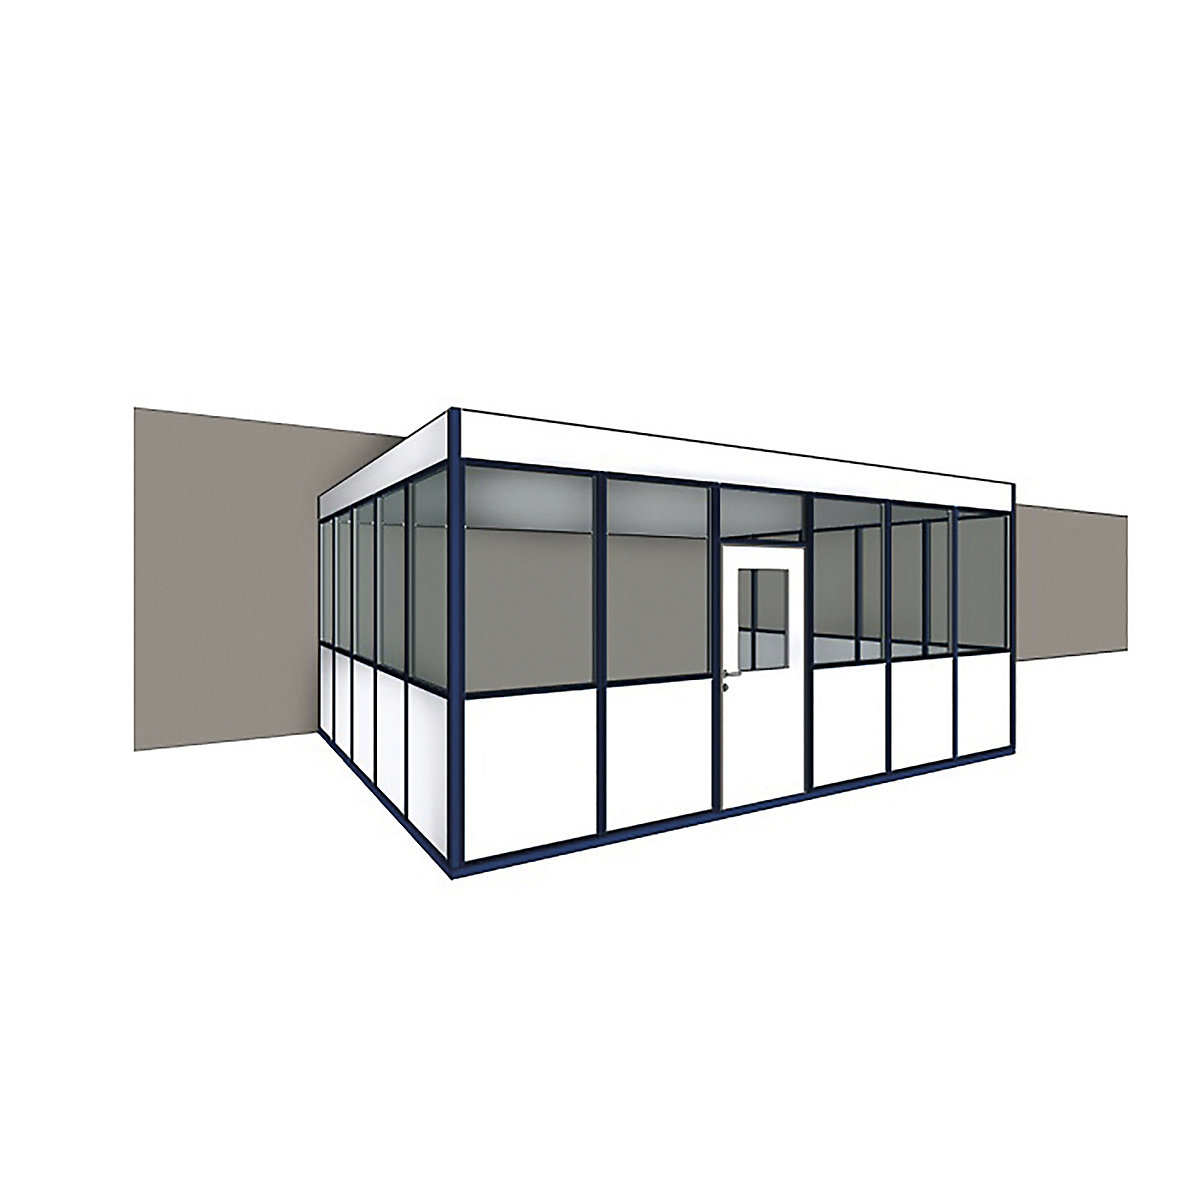 Container uso ufficio, 3 lati per essere addossato ad una parete esistente